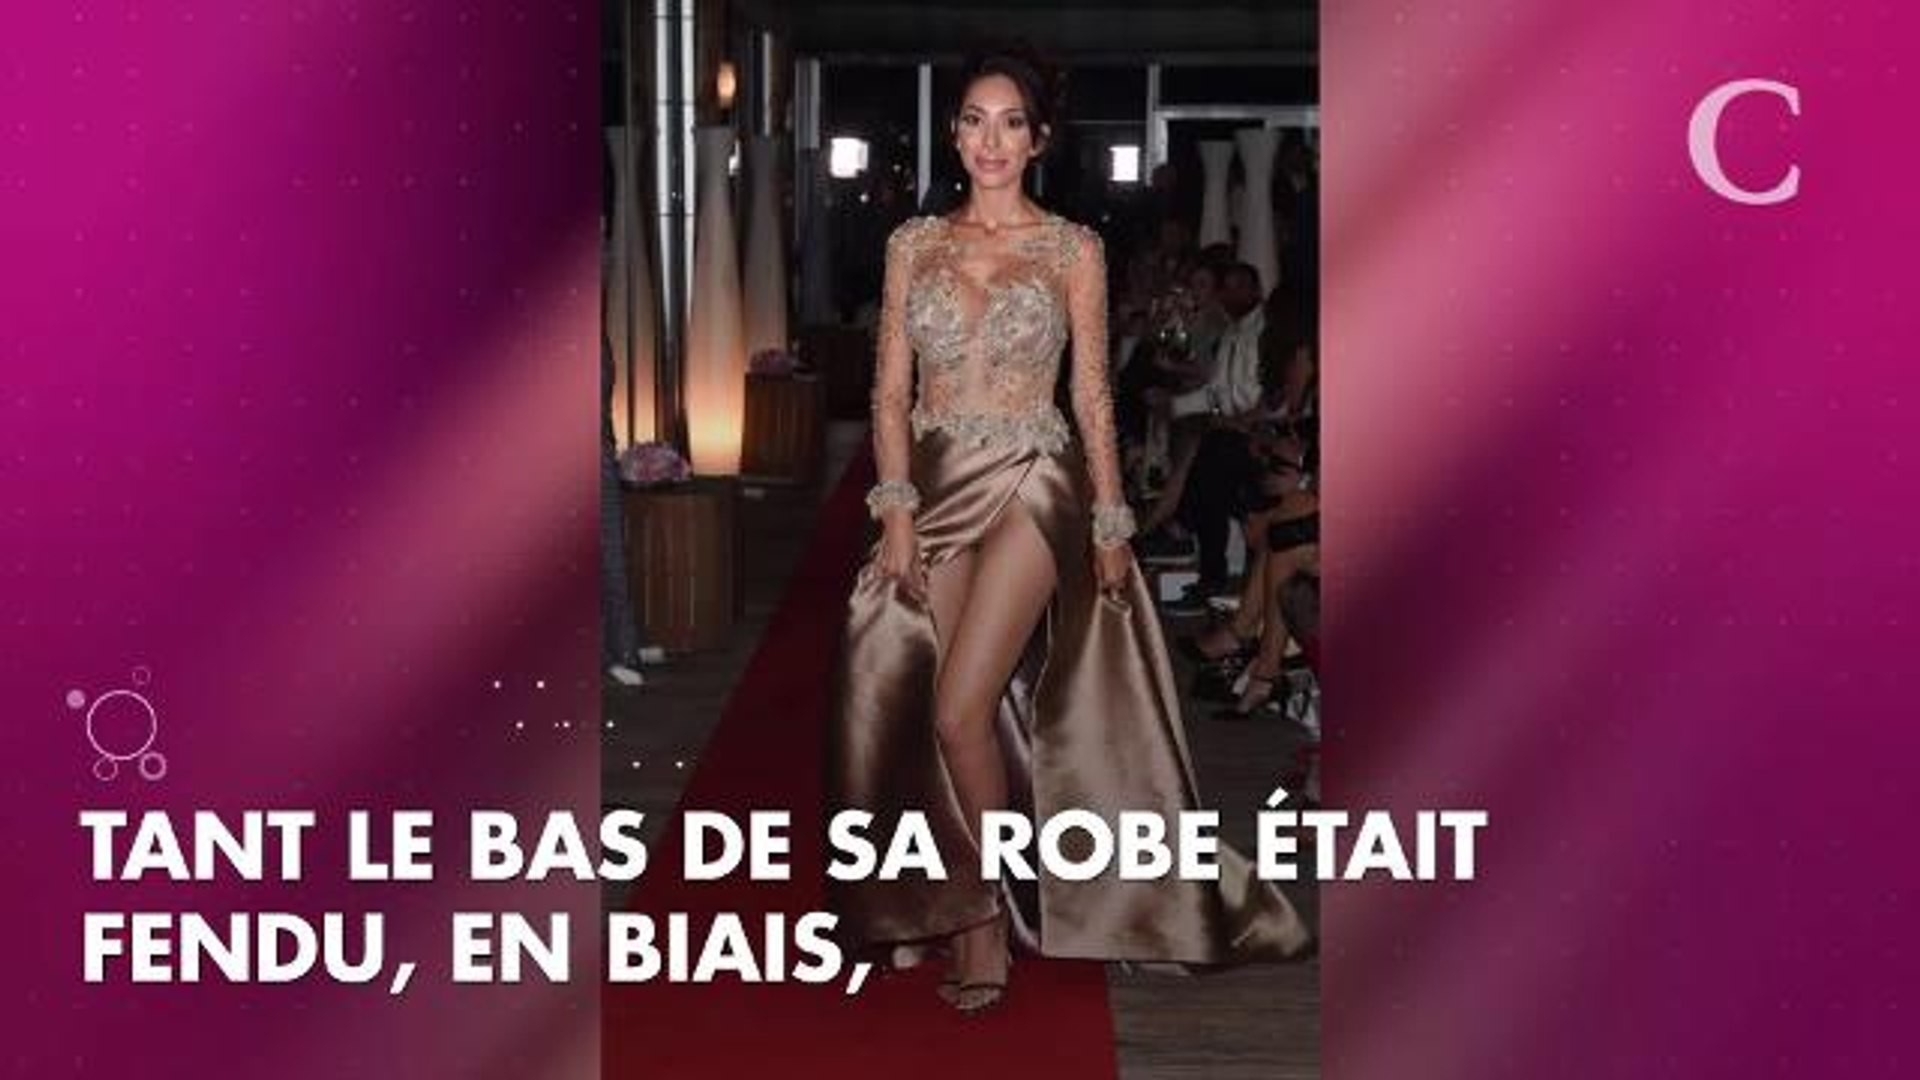 PHOTOS. Cannes 2018 : Farrah Abraham a oublié sa culotte et en dévoile un  peu trop ! - Vidéo Dailymotion